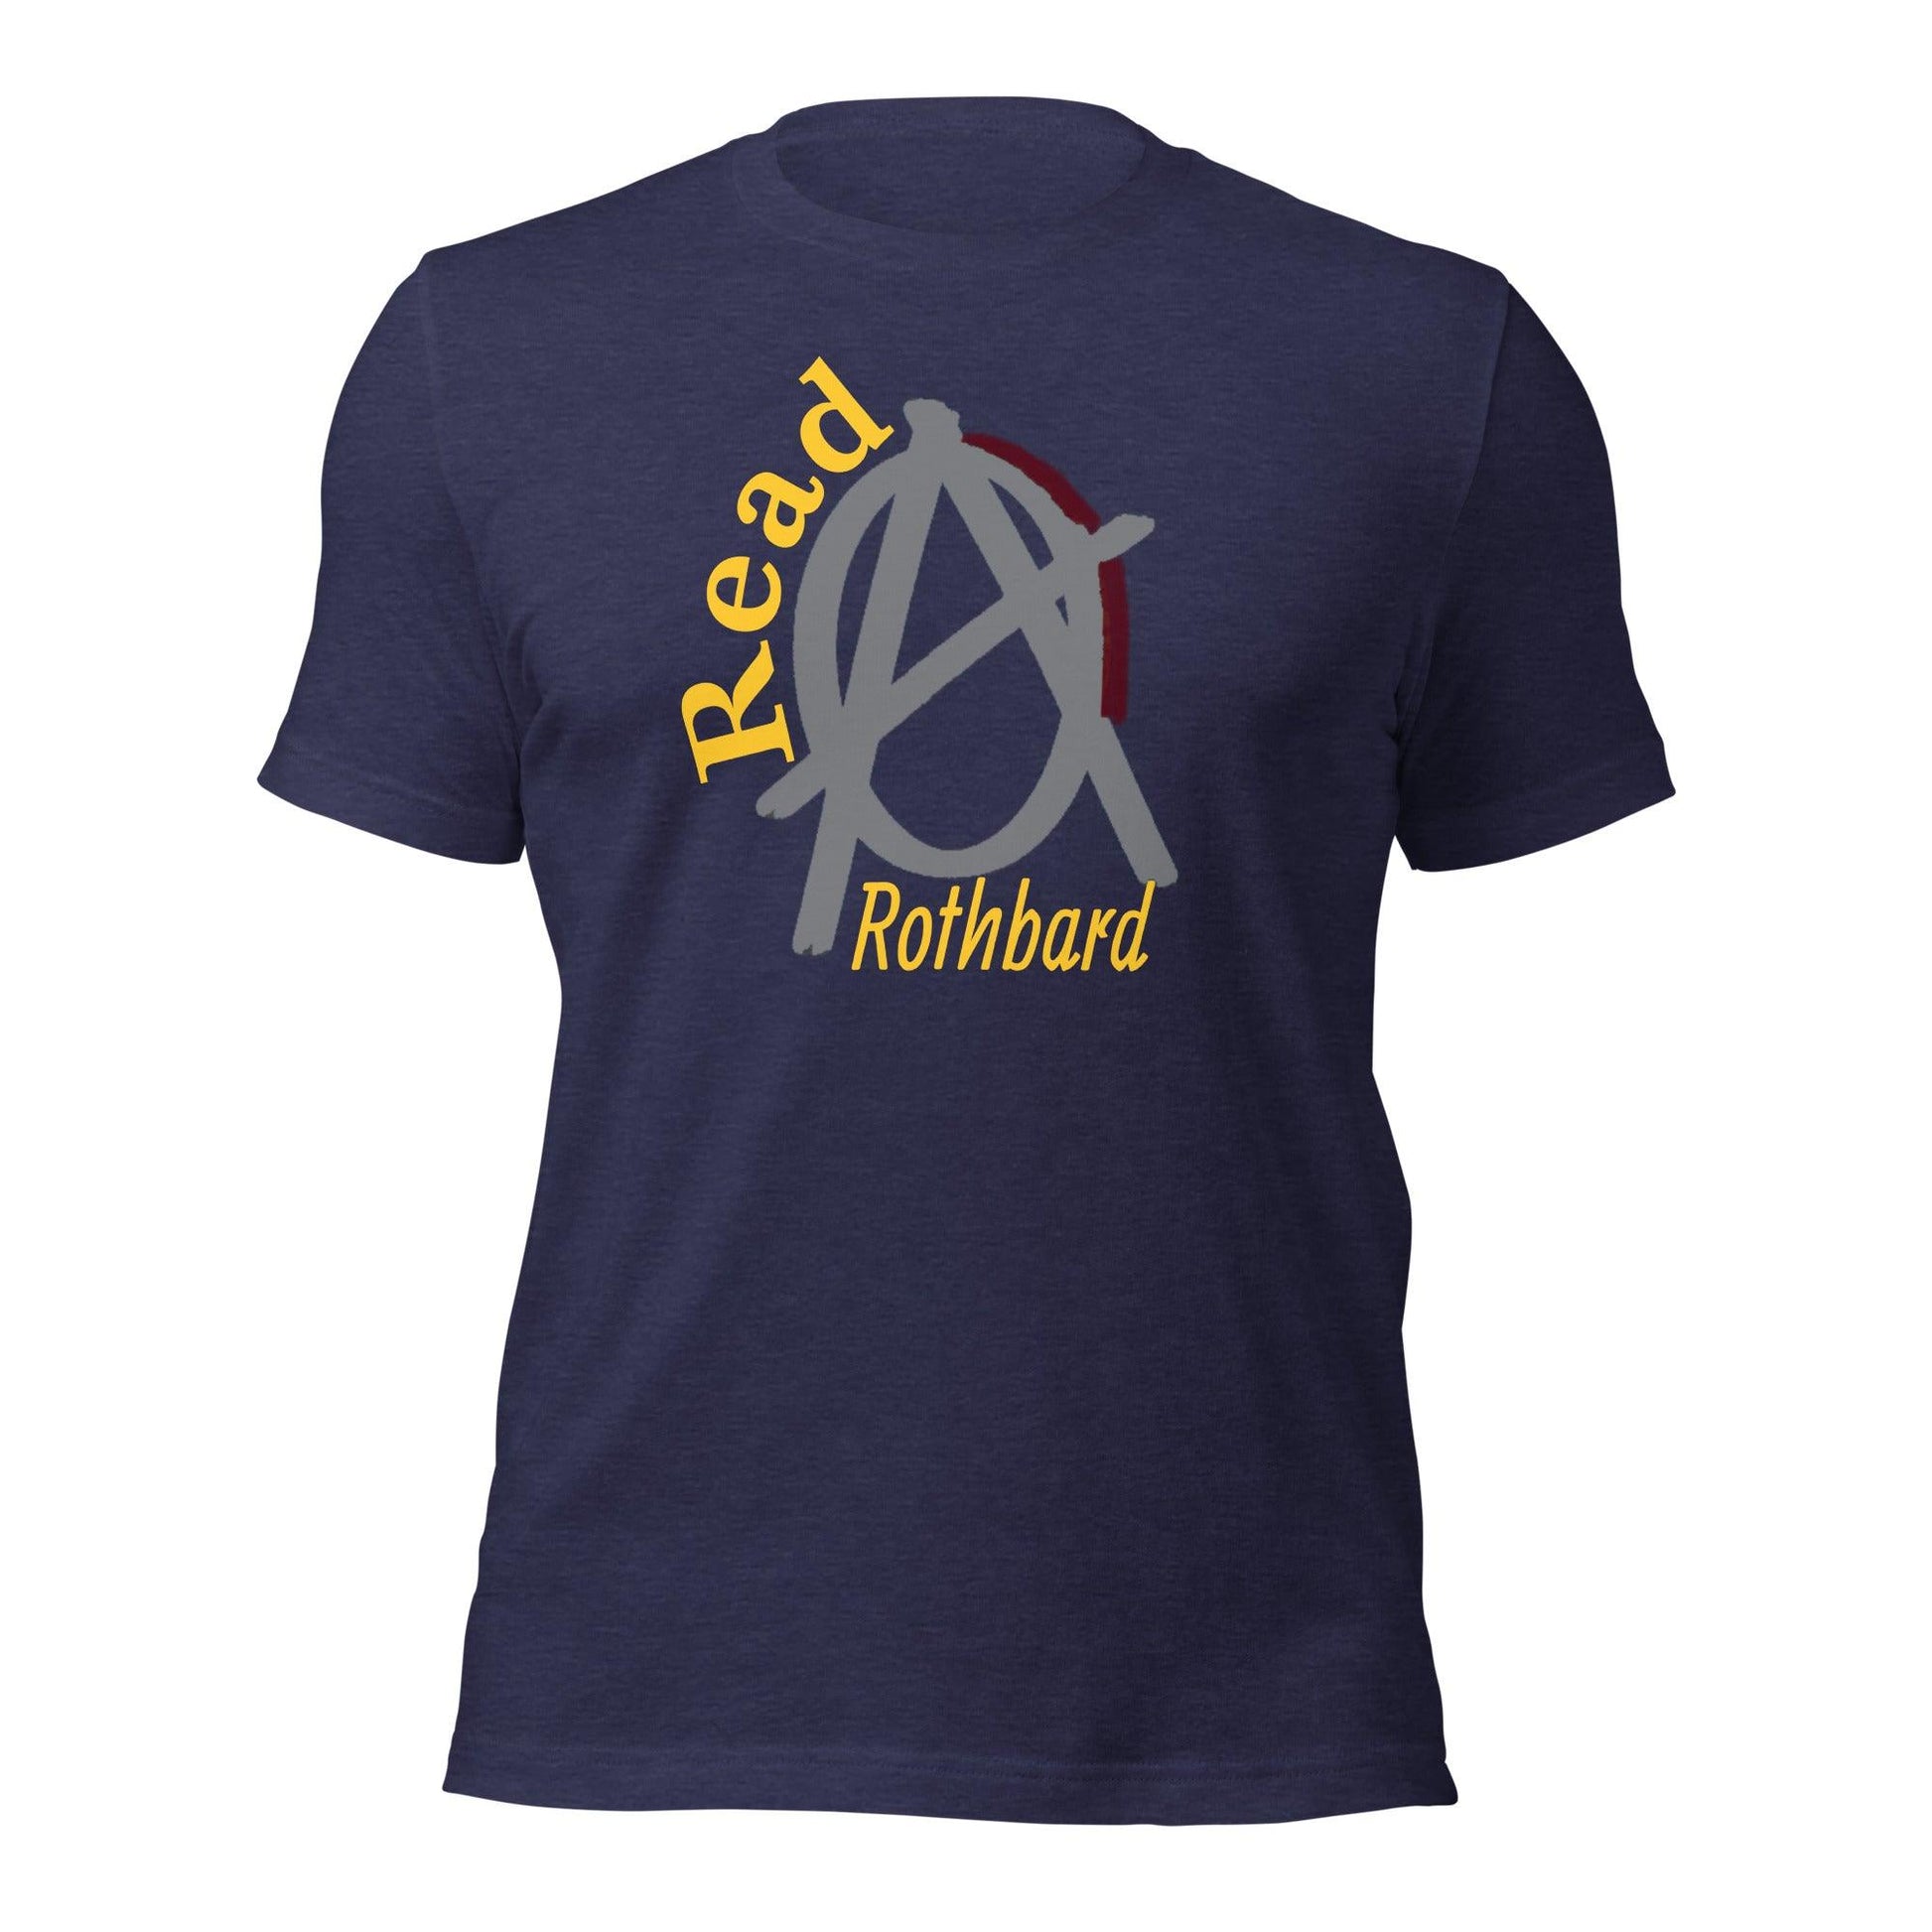 Anarchy Wear Agora Grey "Read Rothbard" Unisex t-shirt - AnarchyWear